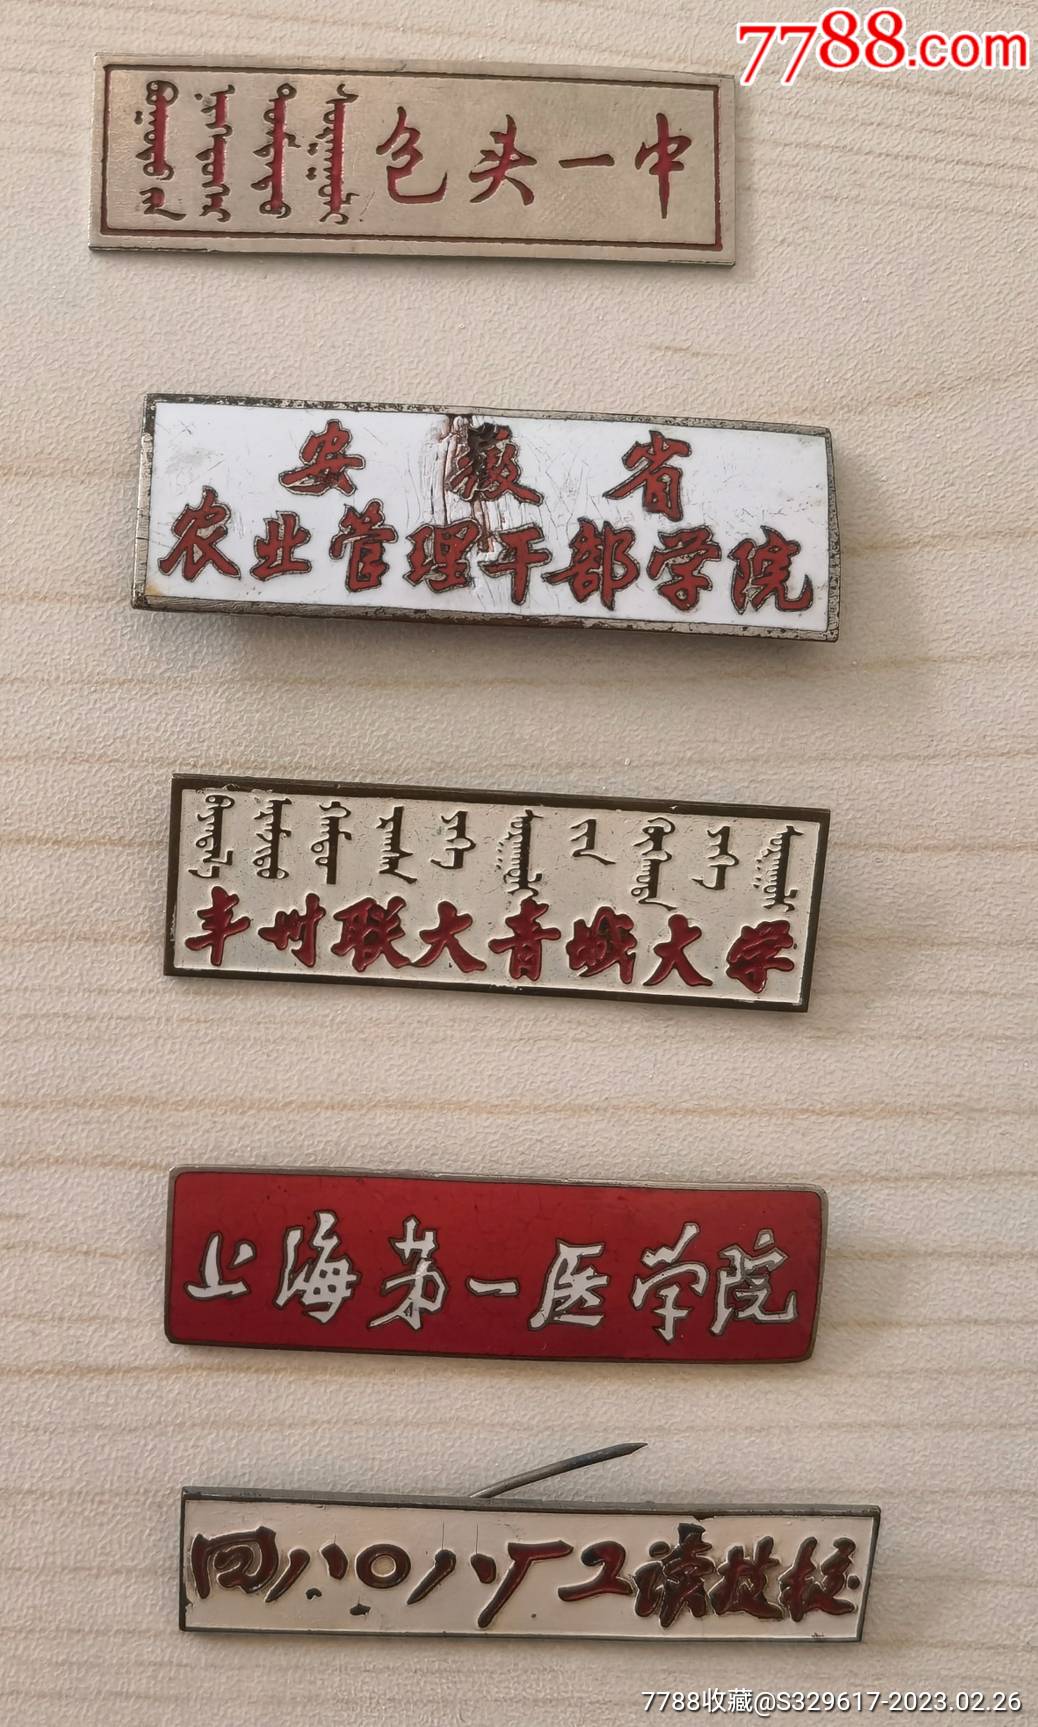 重庆市第一中学校徽图片